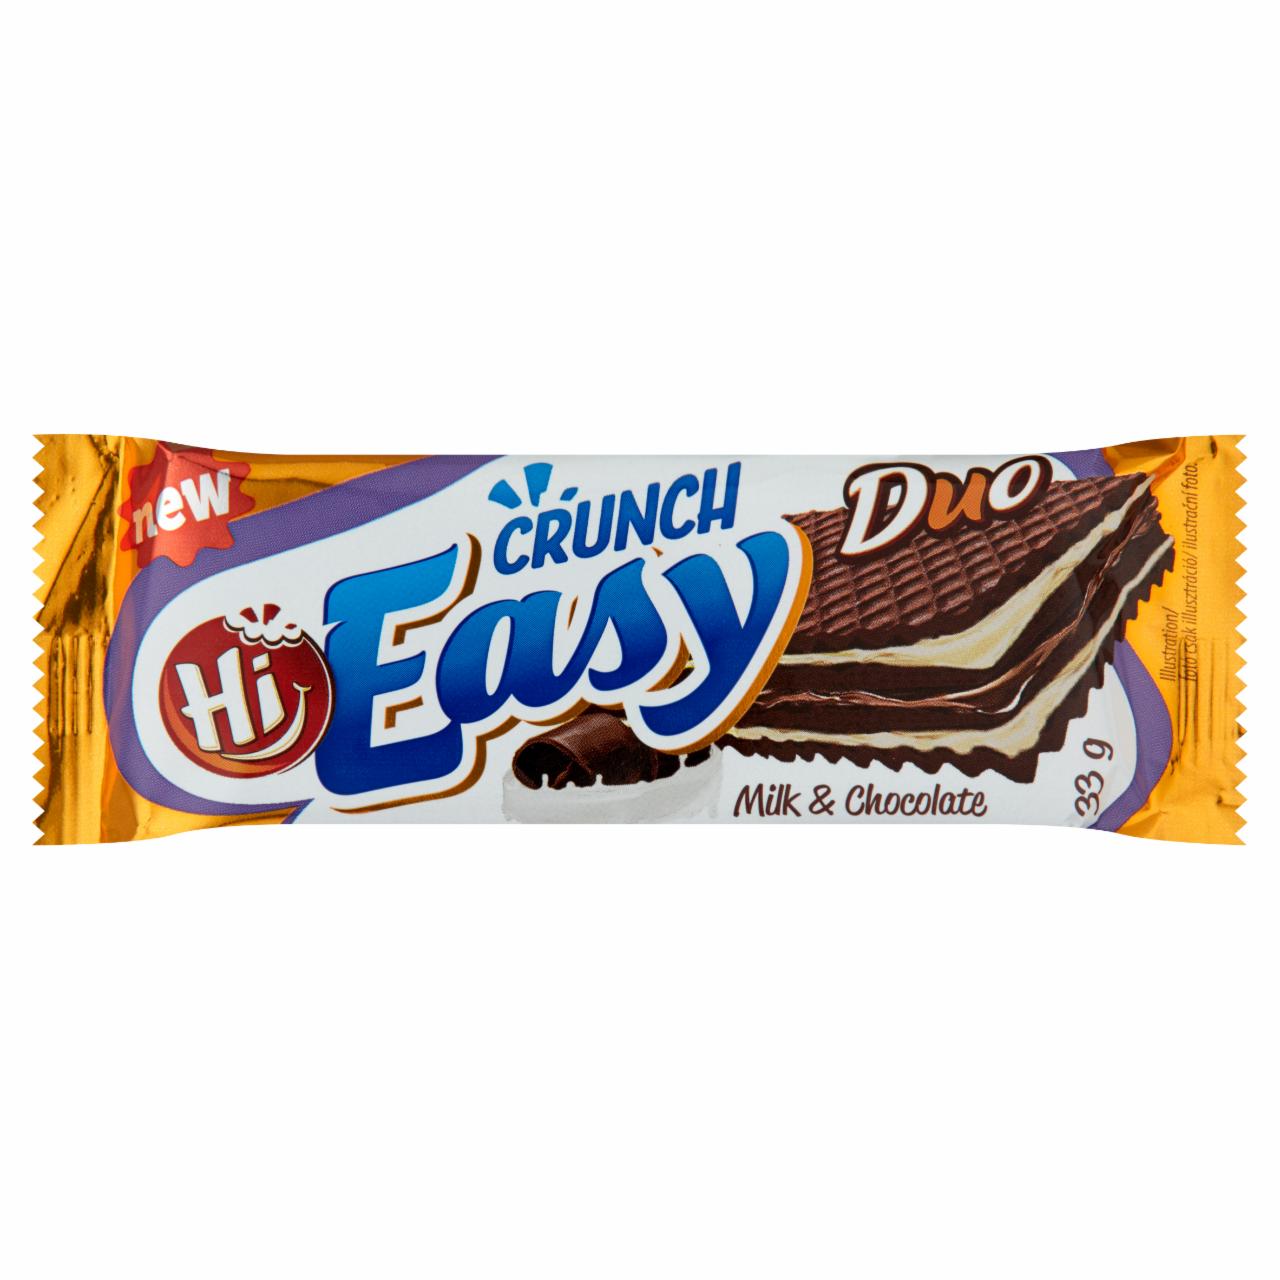 Képek - Hi Easy Crunch Duo tejszín és csokoládé ízű krémmel töltött kakaós ostya 33 g